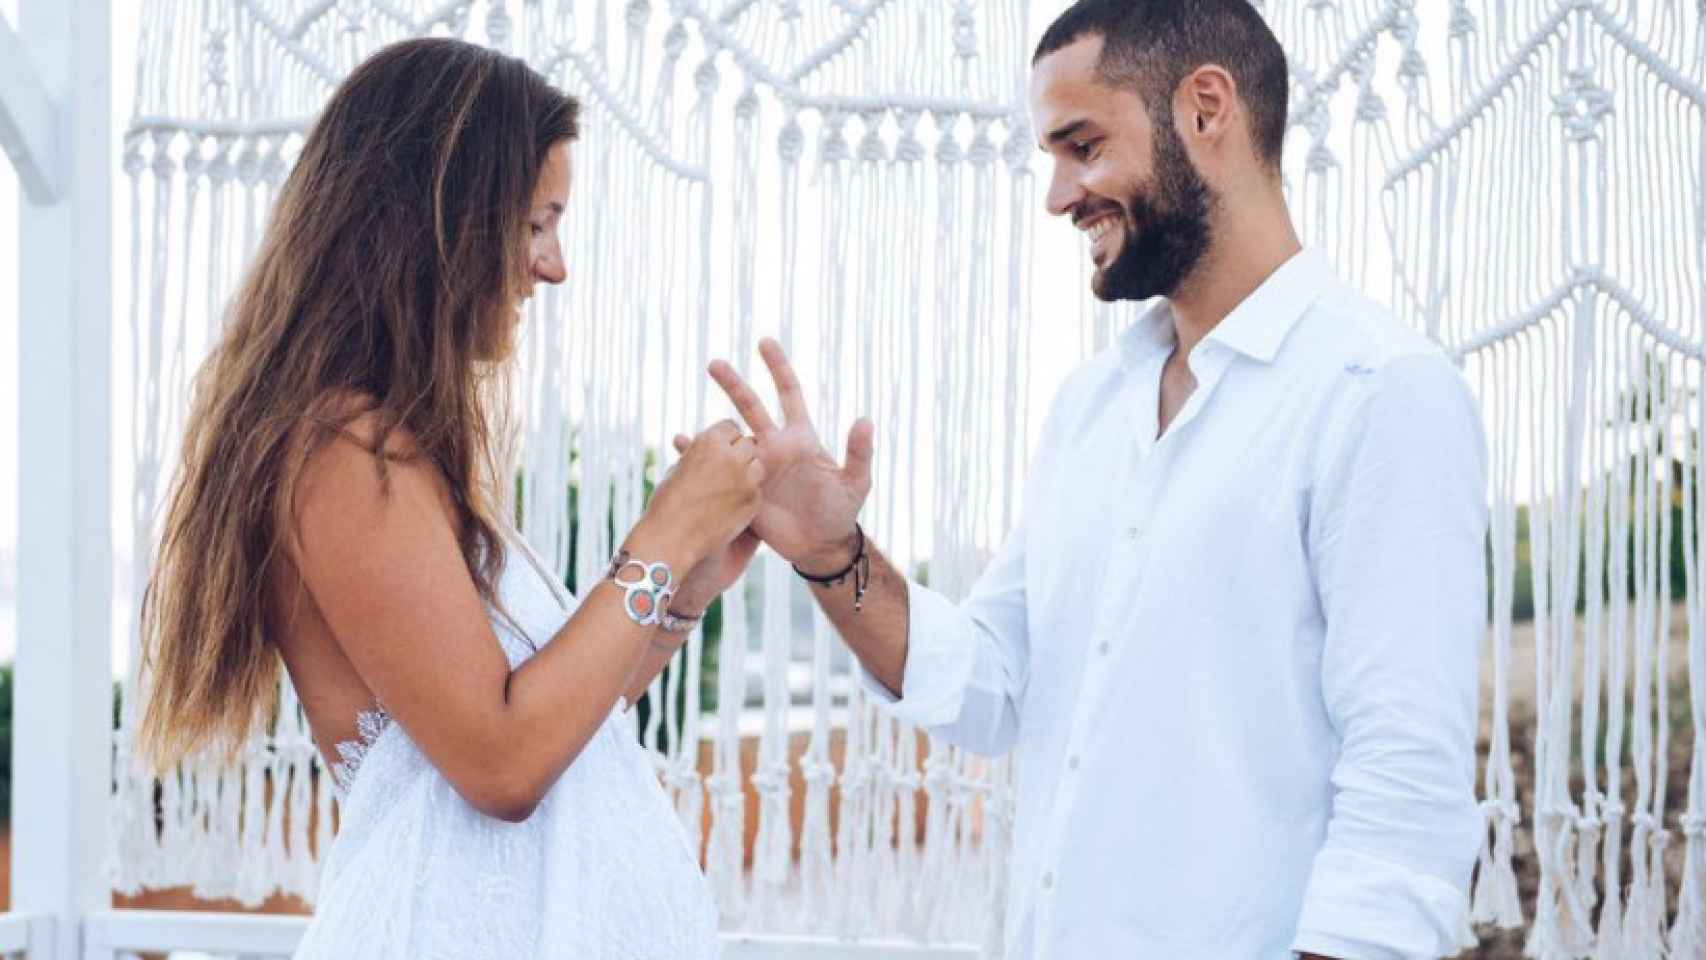 La boda sorpresa de Malena Costa y Mario Suárez